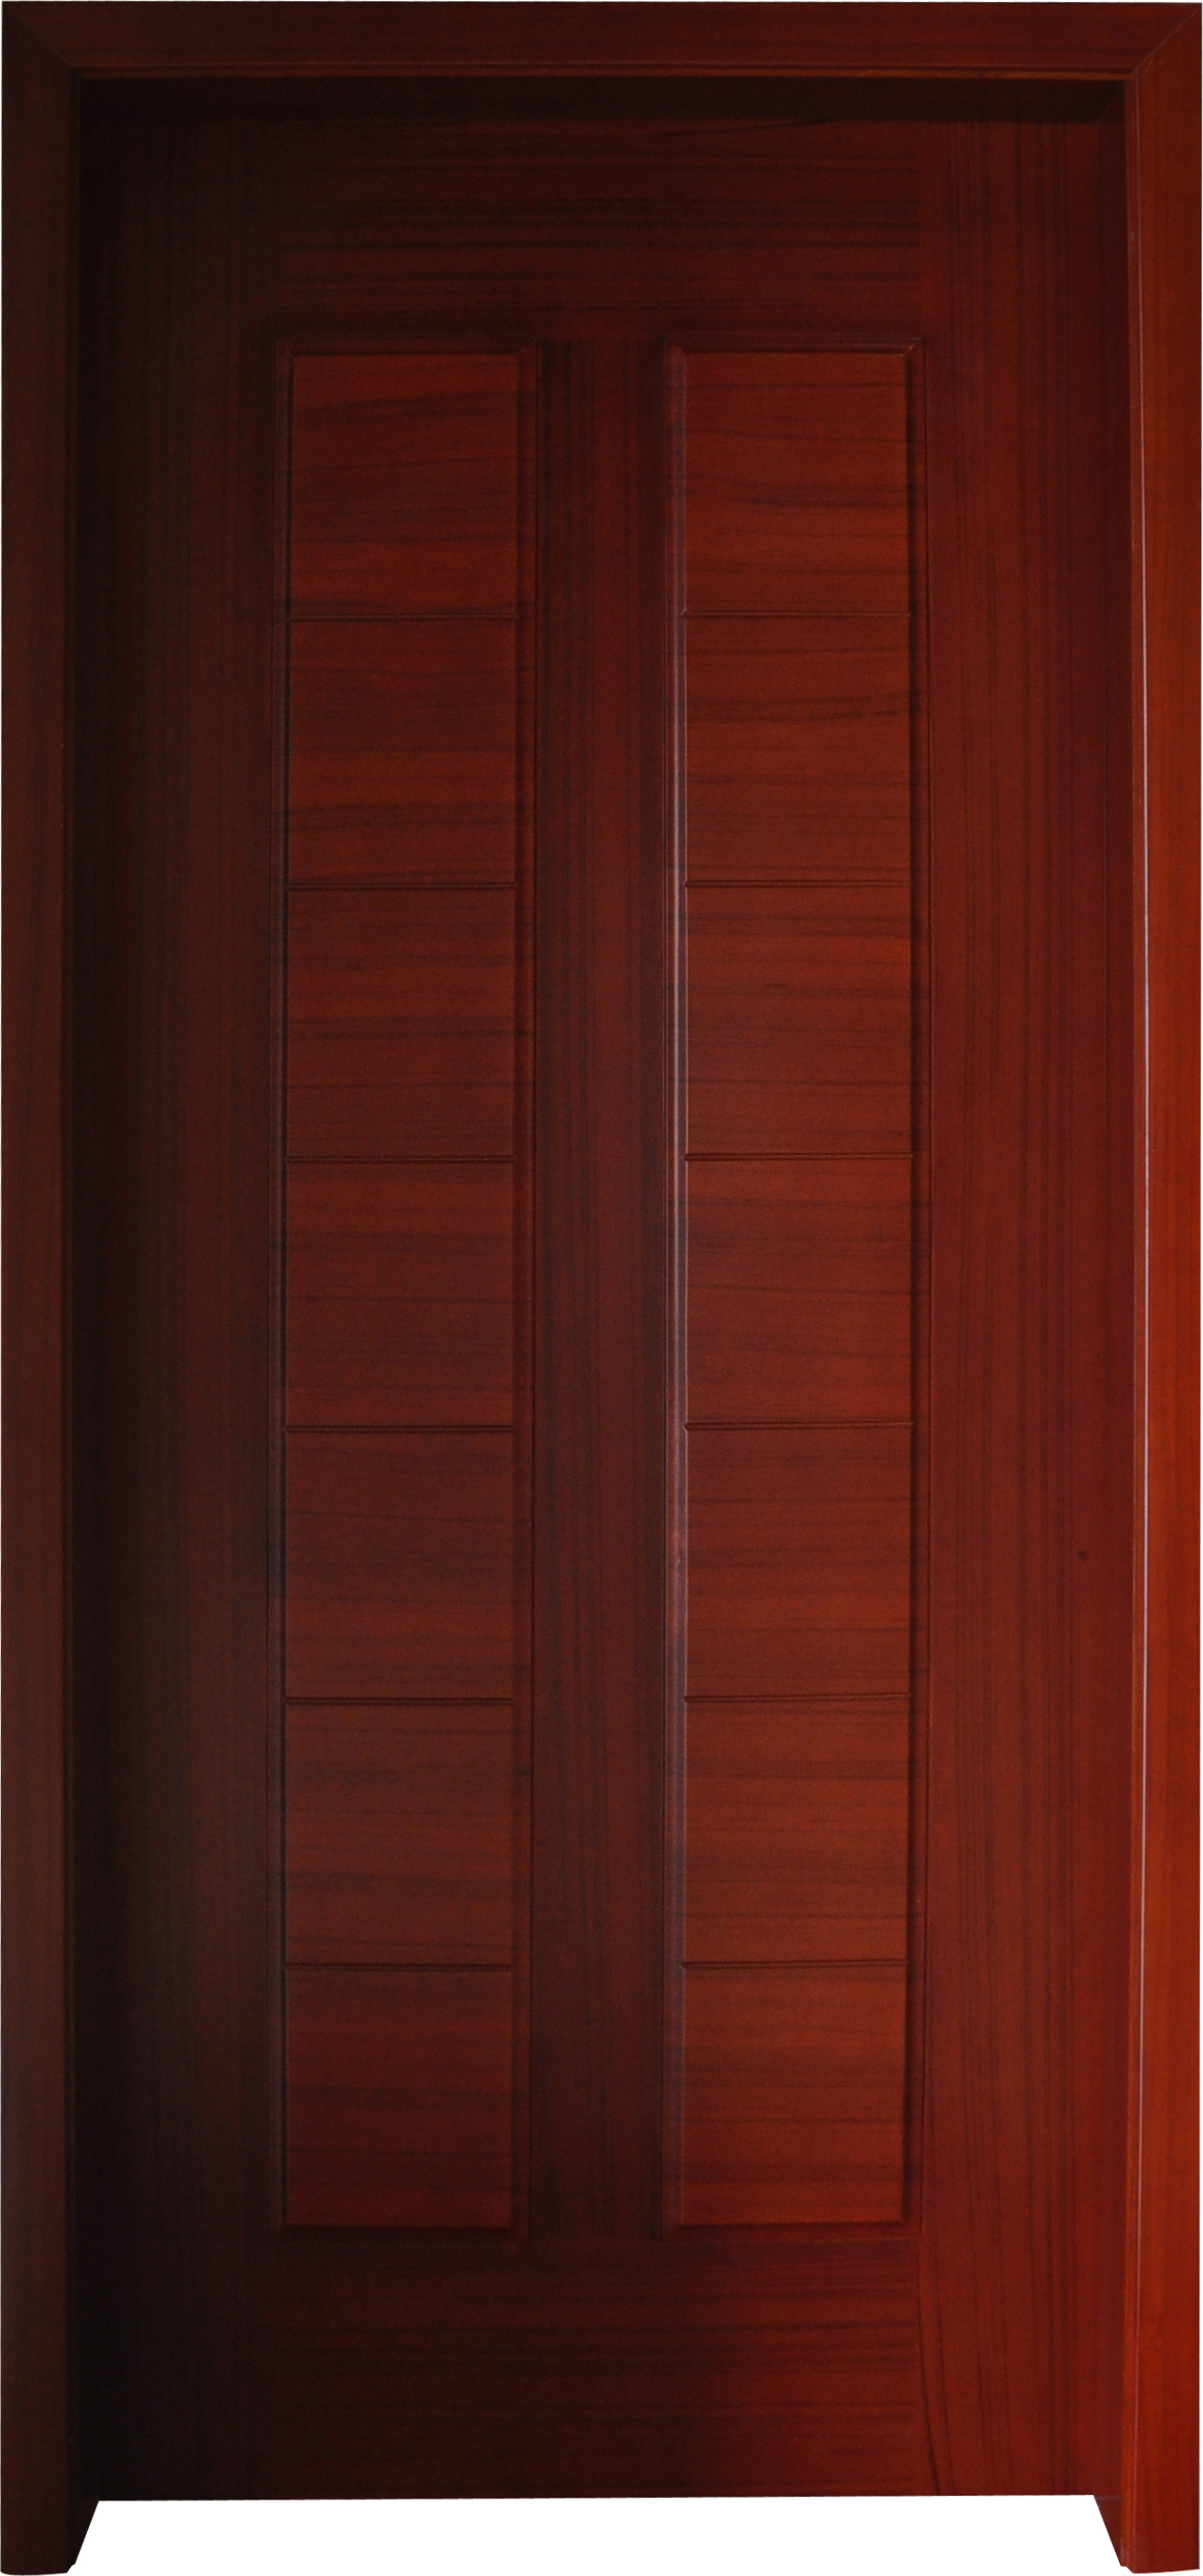 New Son-mother leaf wooden door YHWE-119_http://www.chinese-door.com